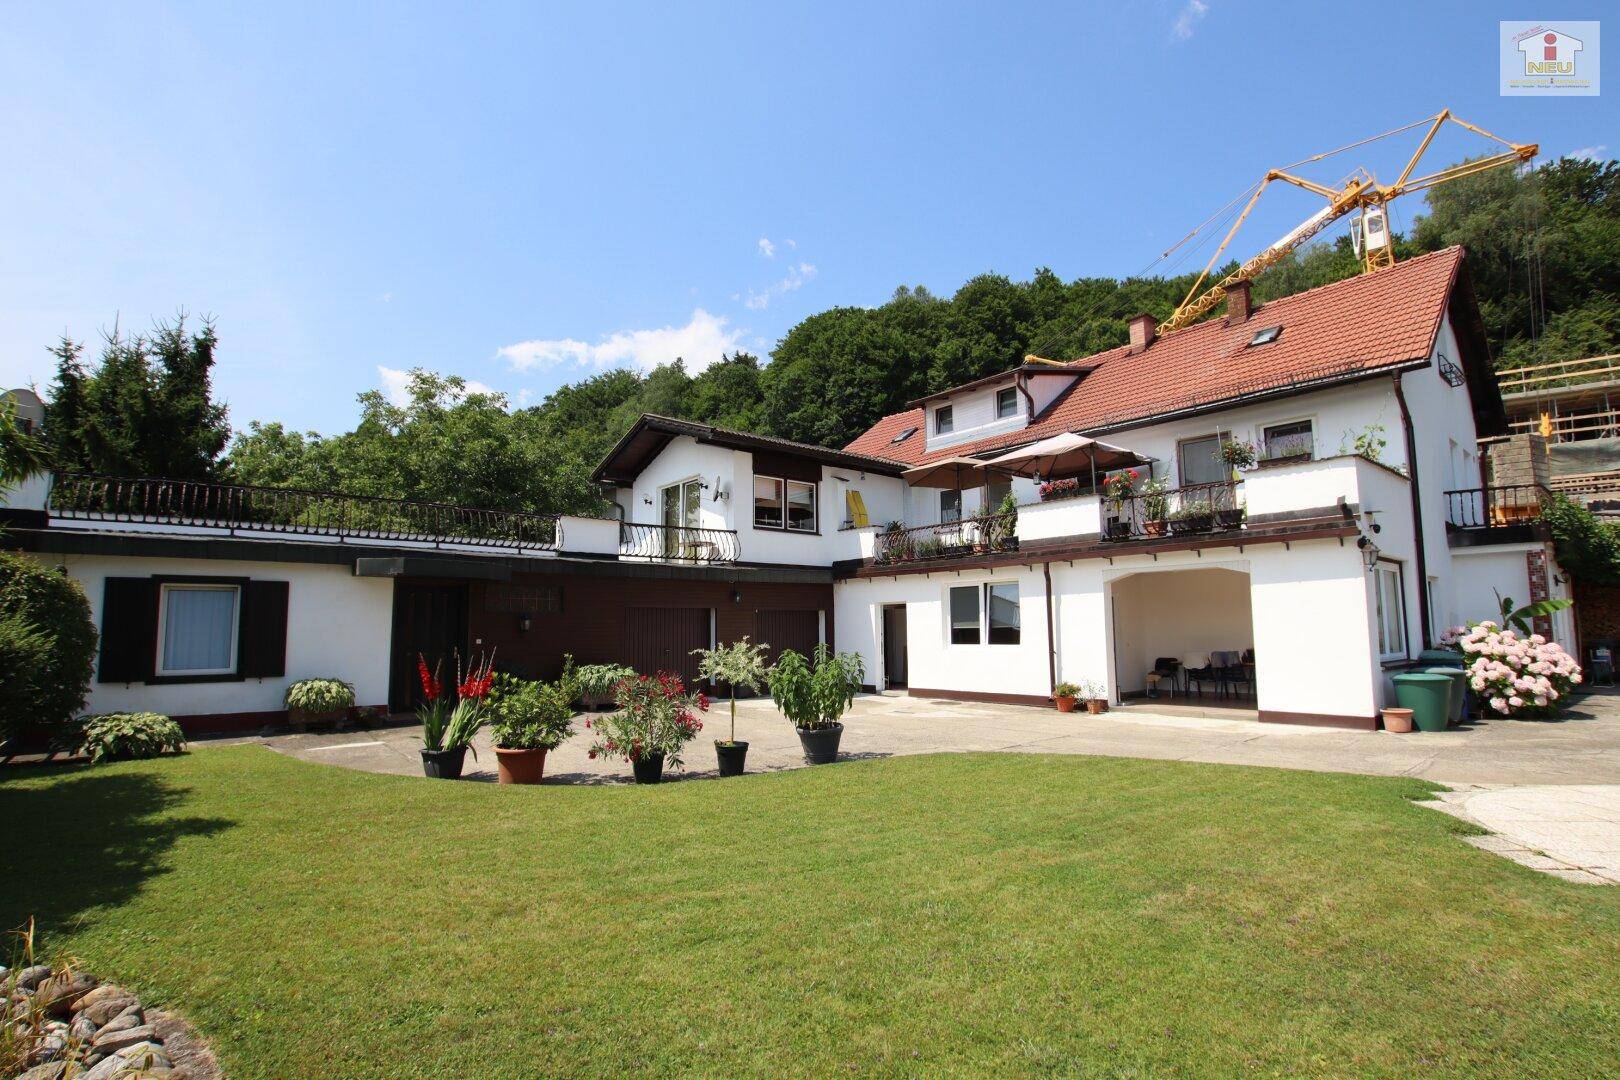 300m² Wohnhaus mit 70m² Einliegerwohnung in Reifnitz mit Seeblick und Seenähe in TOPLAGE